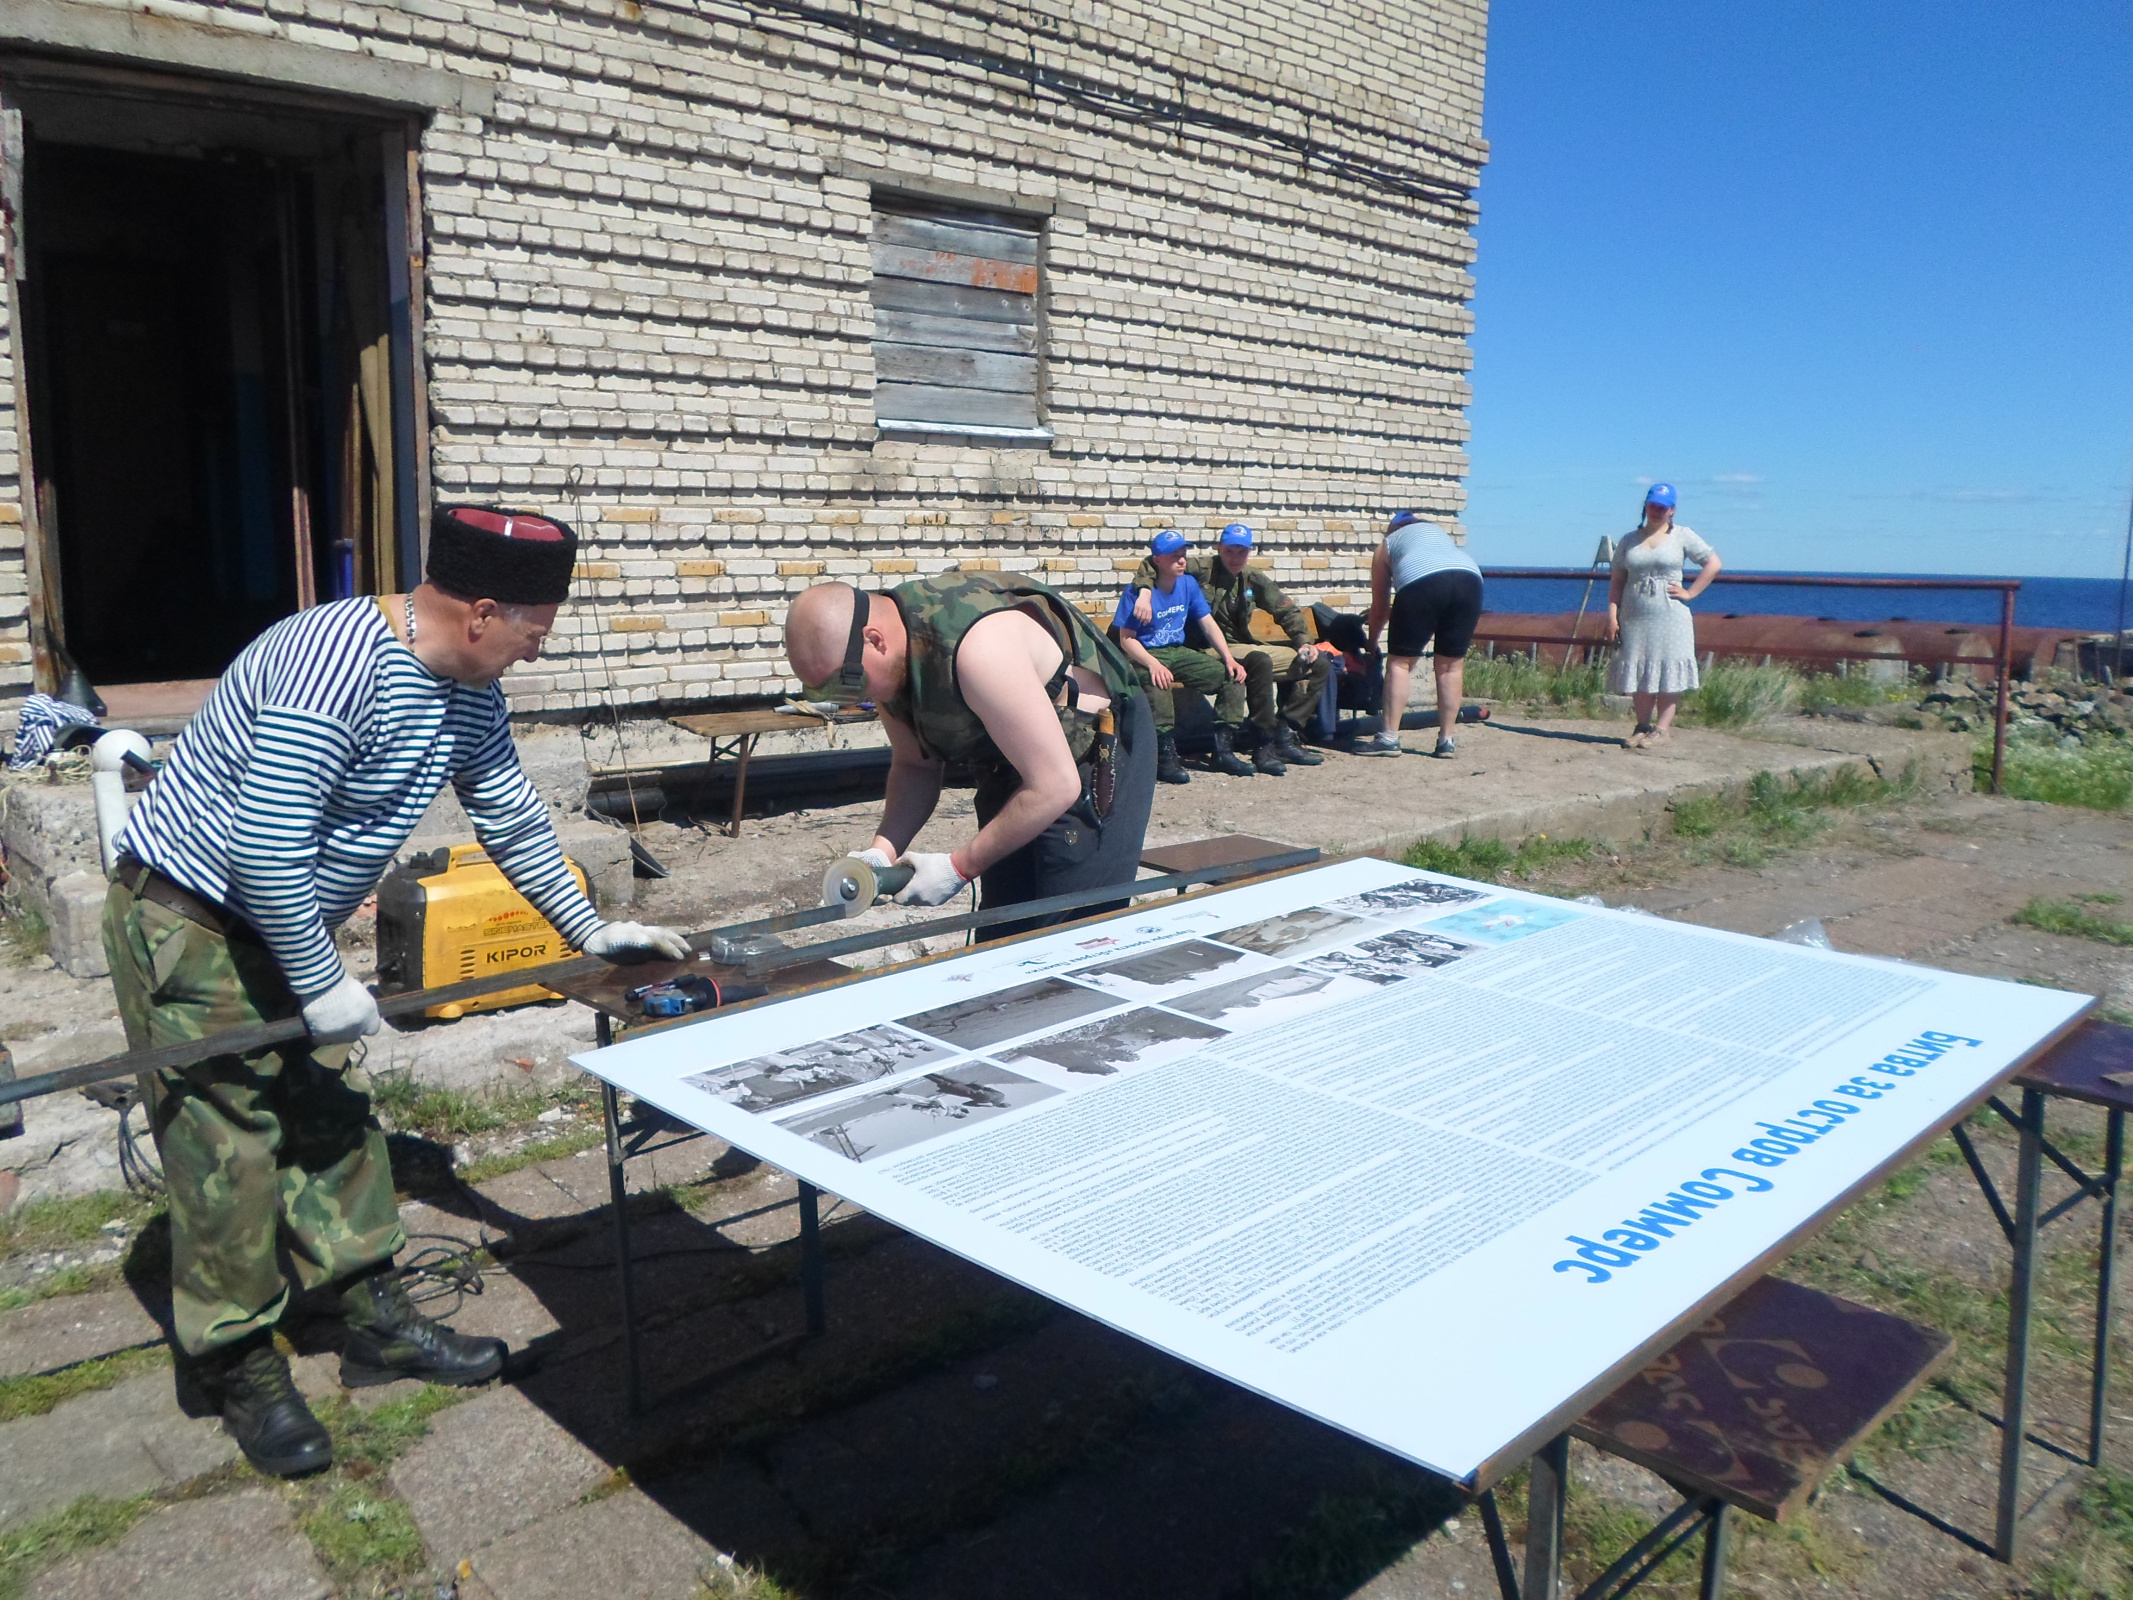 Участники экспедиции изготавливают информационные стенды с архивными фотографиями острова Соммерс. Фото предоставлено участниками экспедиции 